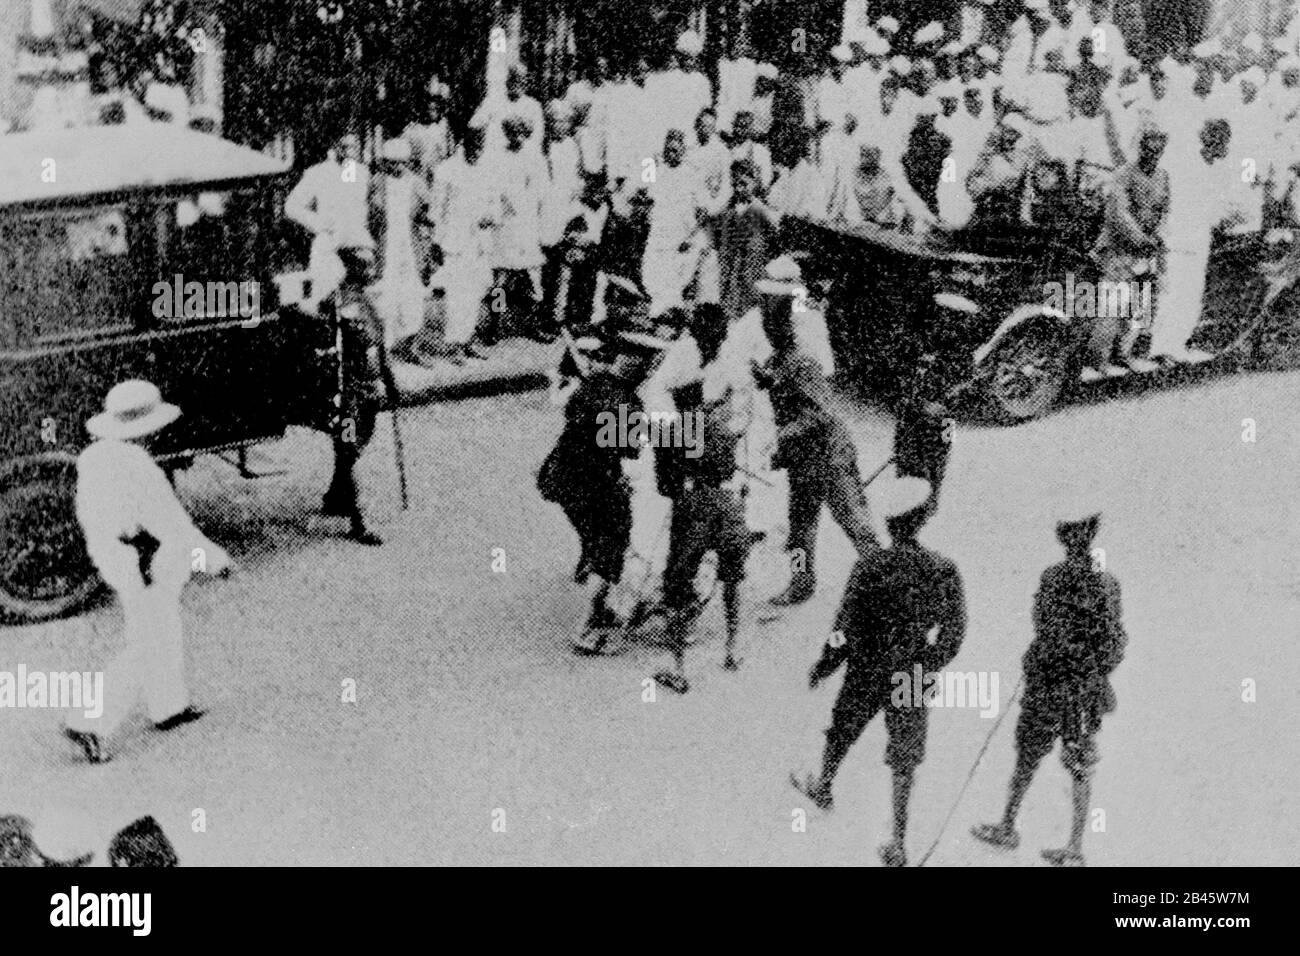 La polizia britannica caning lathi carica indiani combattenti di libertà, India, Asia, 1925, vecchia immagine del 1900 vintage Foto Stock